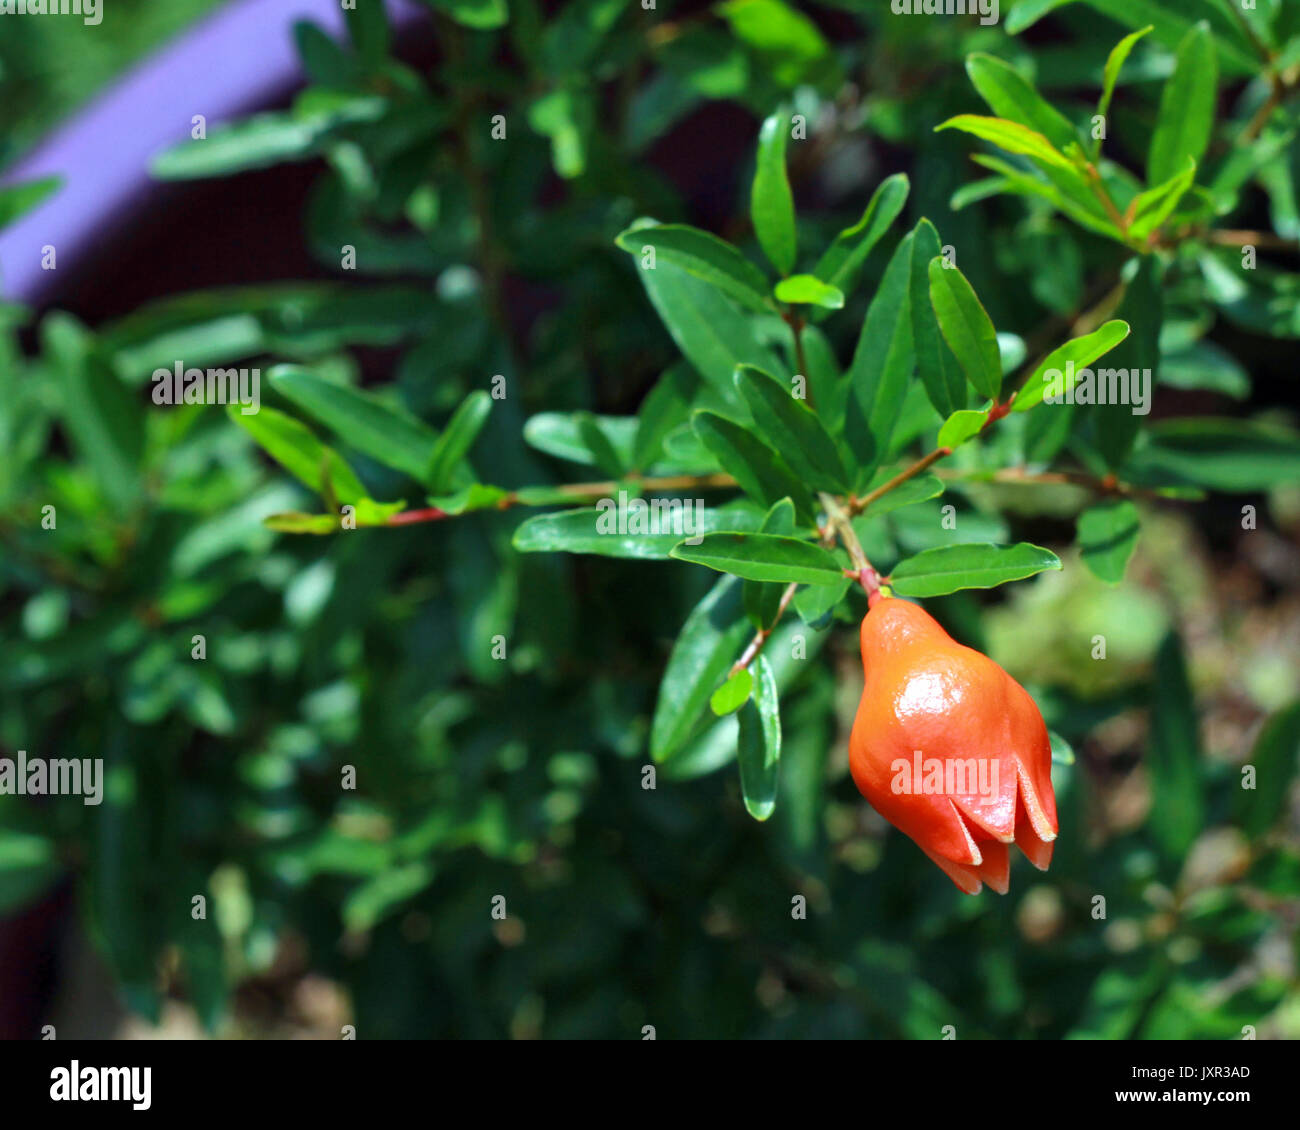 A single flower bud hangs on a dwarf pomegranate bush in a purple pot. Stock Photo